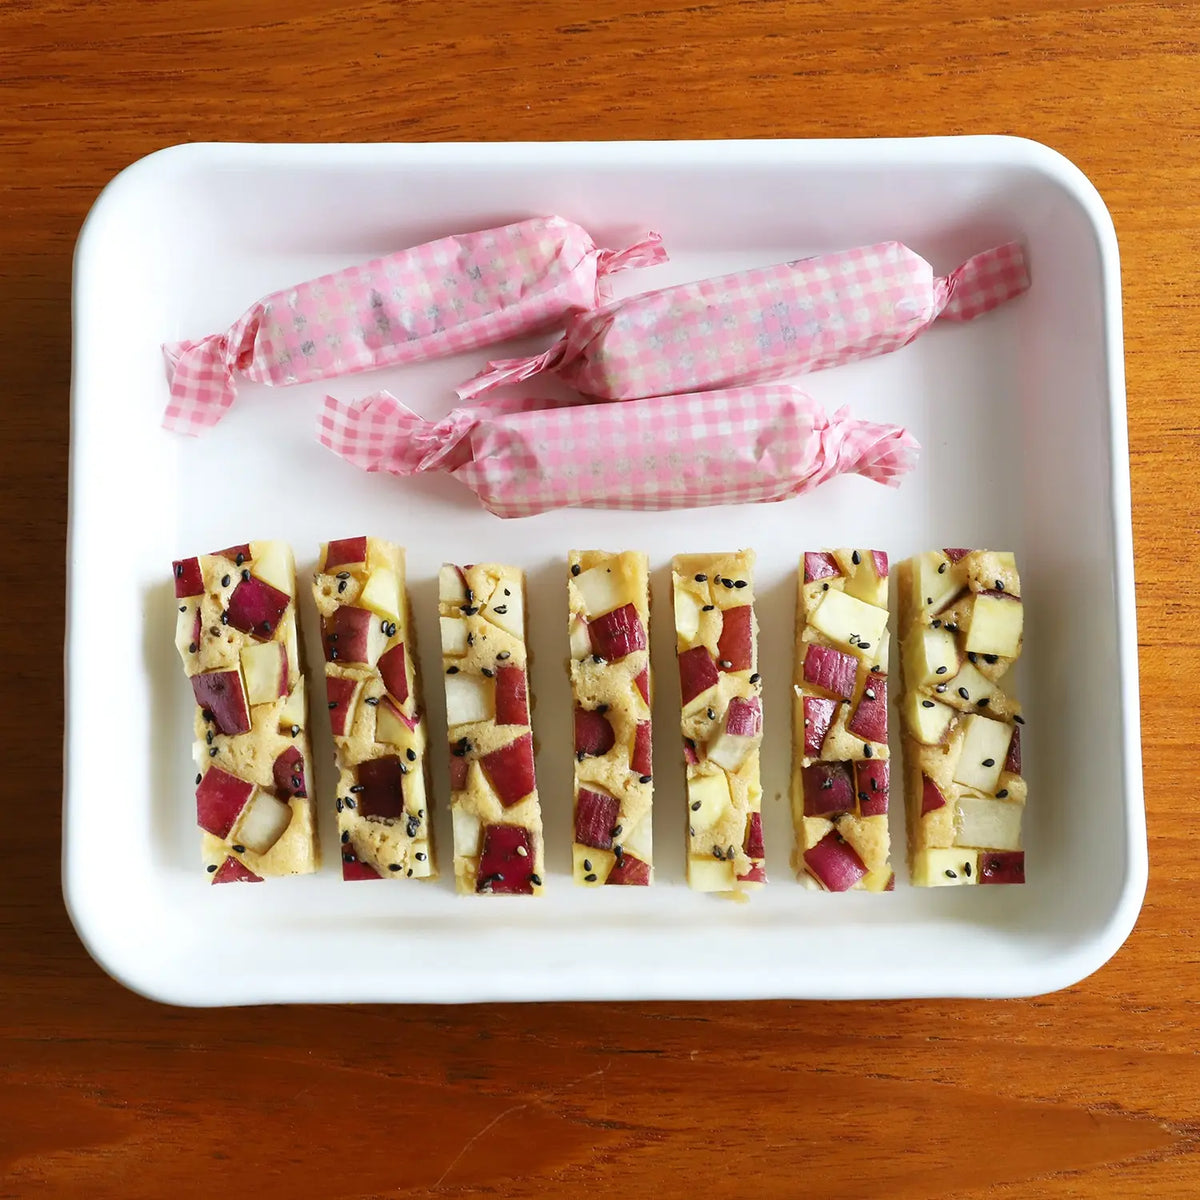 Noda Horo White Series - Enamel Nestable Meal Prep Baking Tray